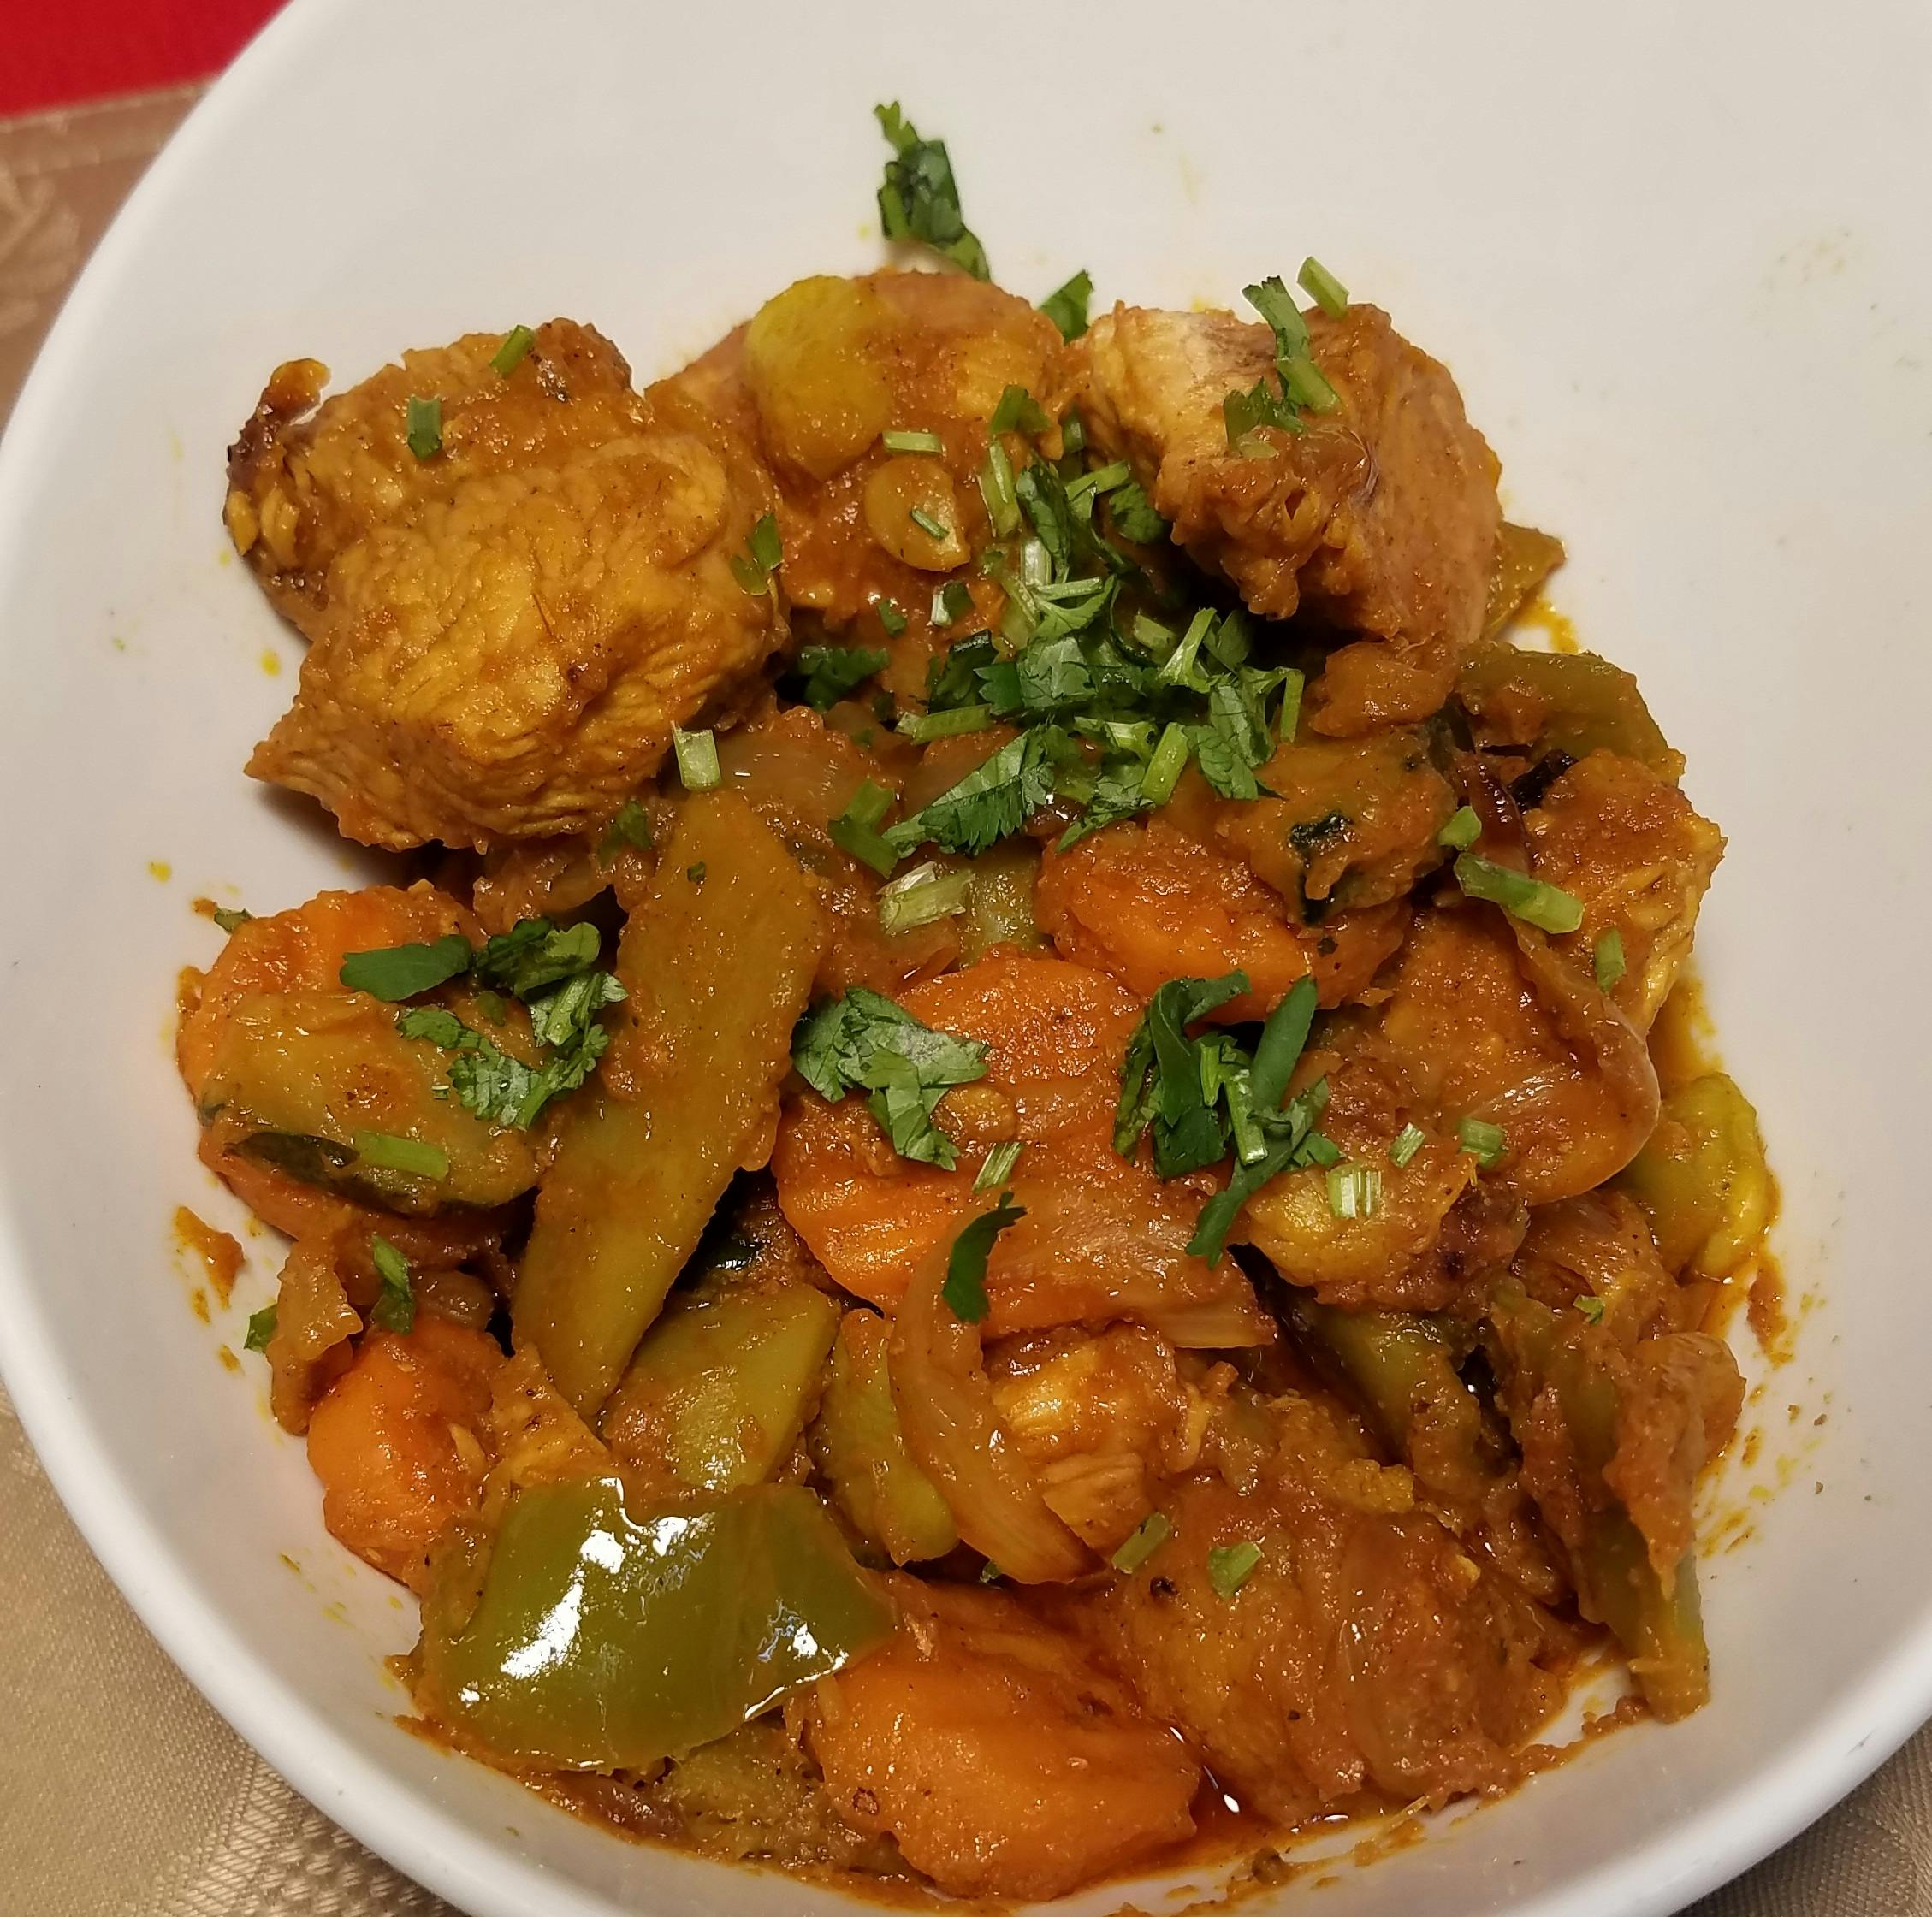 Chicken Jalfrazie (Gluten Free) from Star Of India Tandoori Restaurant in Los Angeles, CA